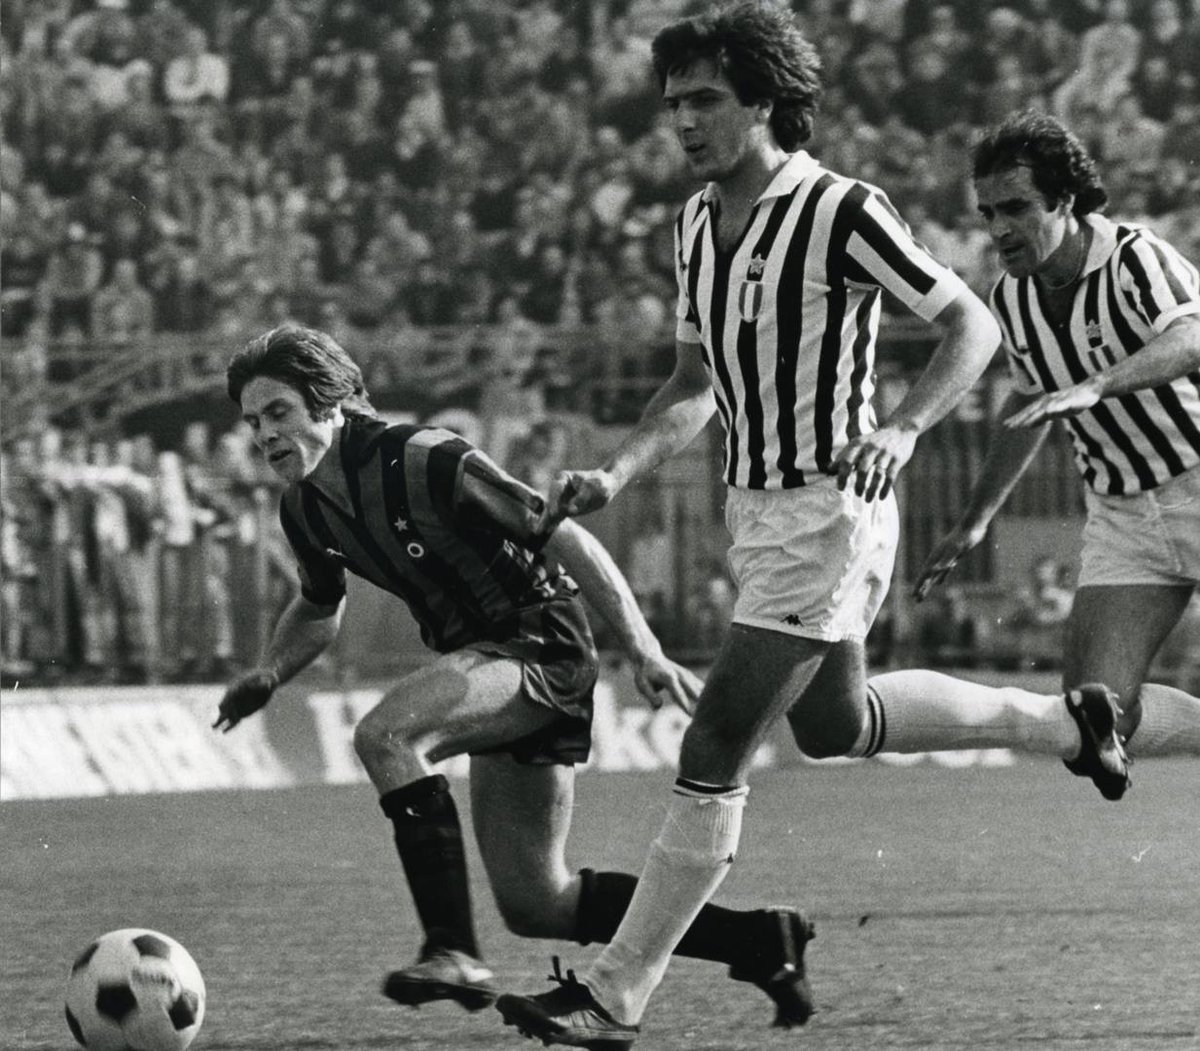 Há exatos 67 anos nascia a lenda Gaetano Scirea. Celebrado pelo talento, elegância e caráter, o camisa 6 marcou 32 gols em 552 jogos e venceu 14 títulos em 14 temporadas na Juventus, superado apenas por Giorgio Chiellini (18) como o defensor mais vitorioso da história bianconera